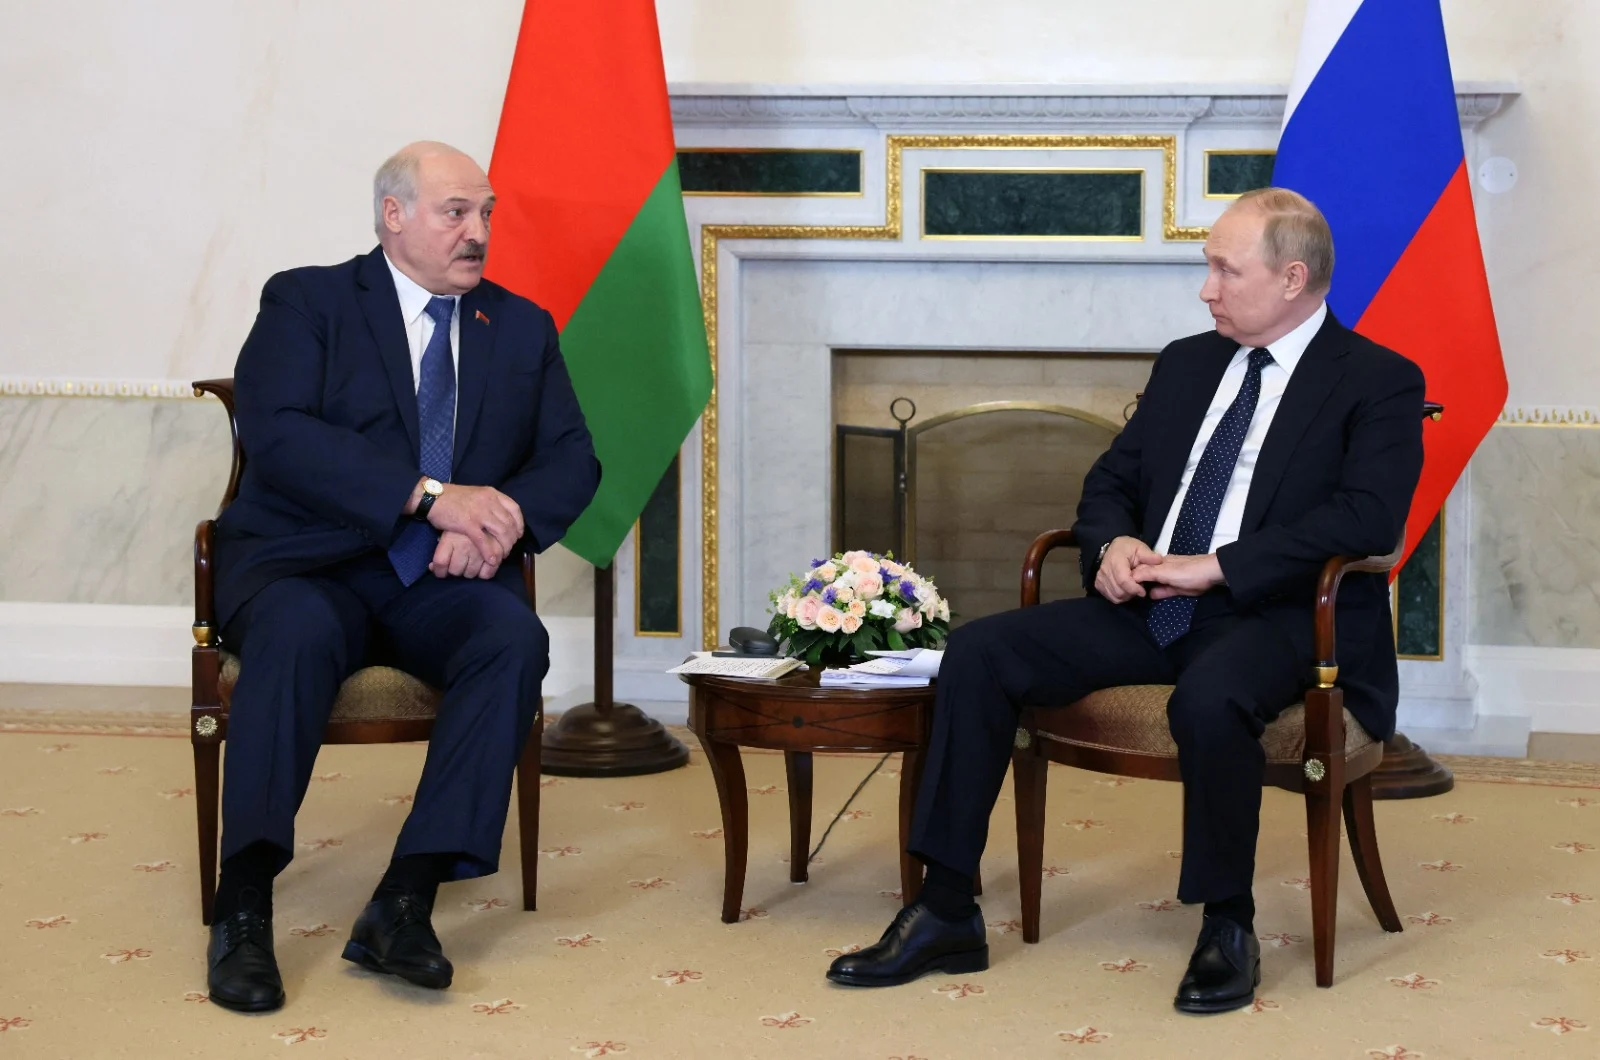 נשיא רוסיה, ולדימיר פוטין ונשיא בלארוס, אלכסנדר לוקשנקו